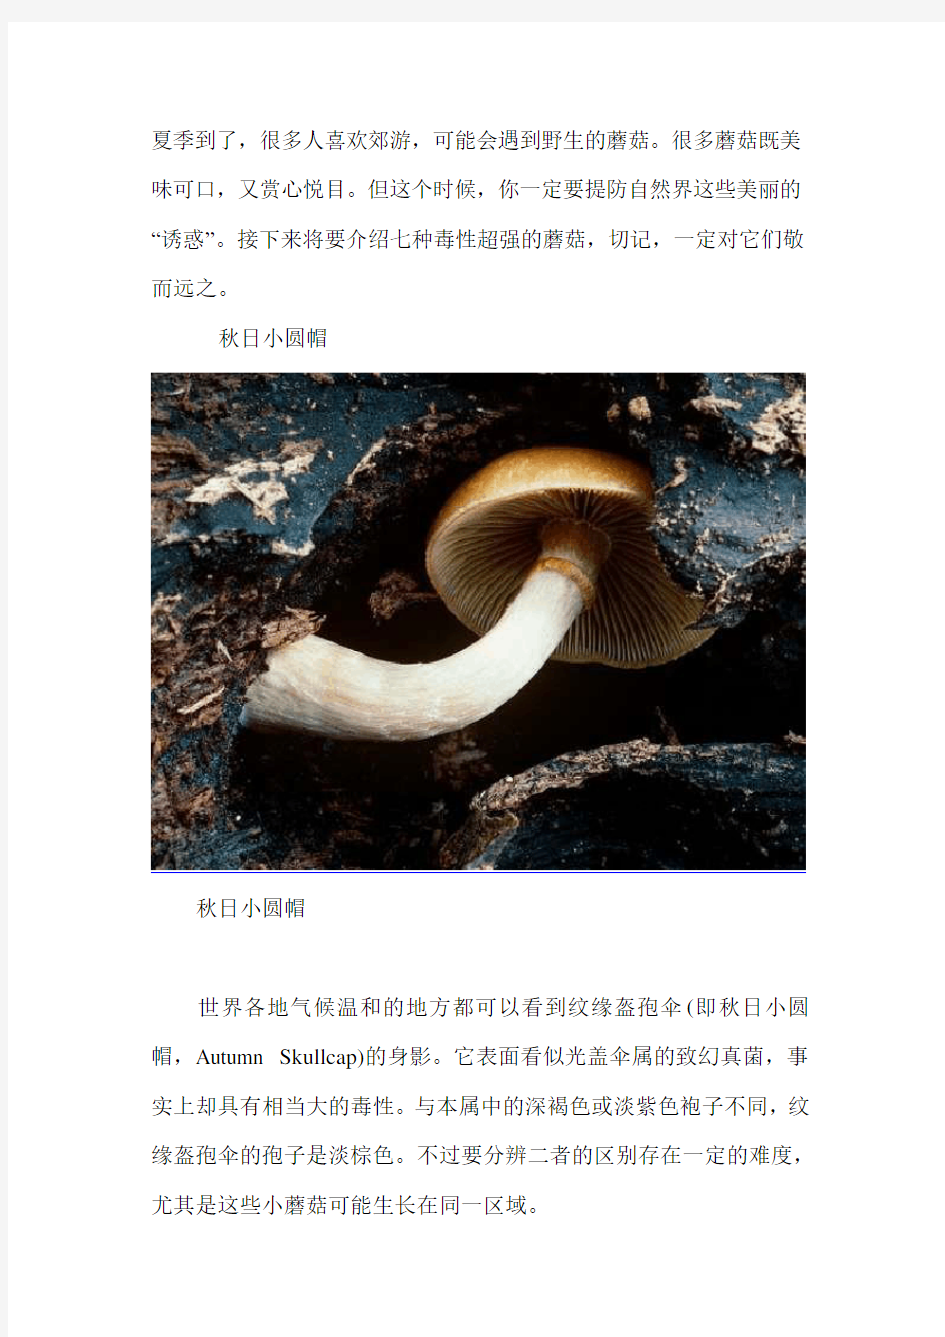 自然界七种致命毒蘑菇(图)